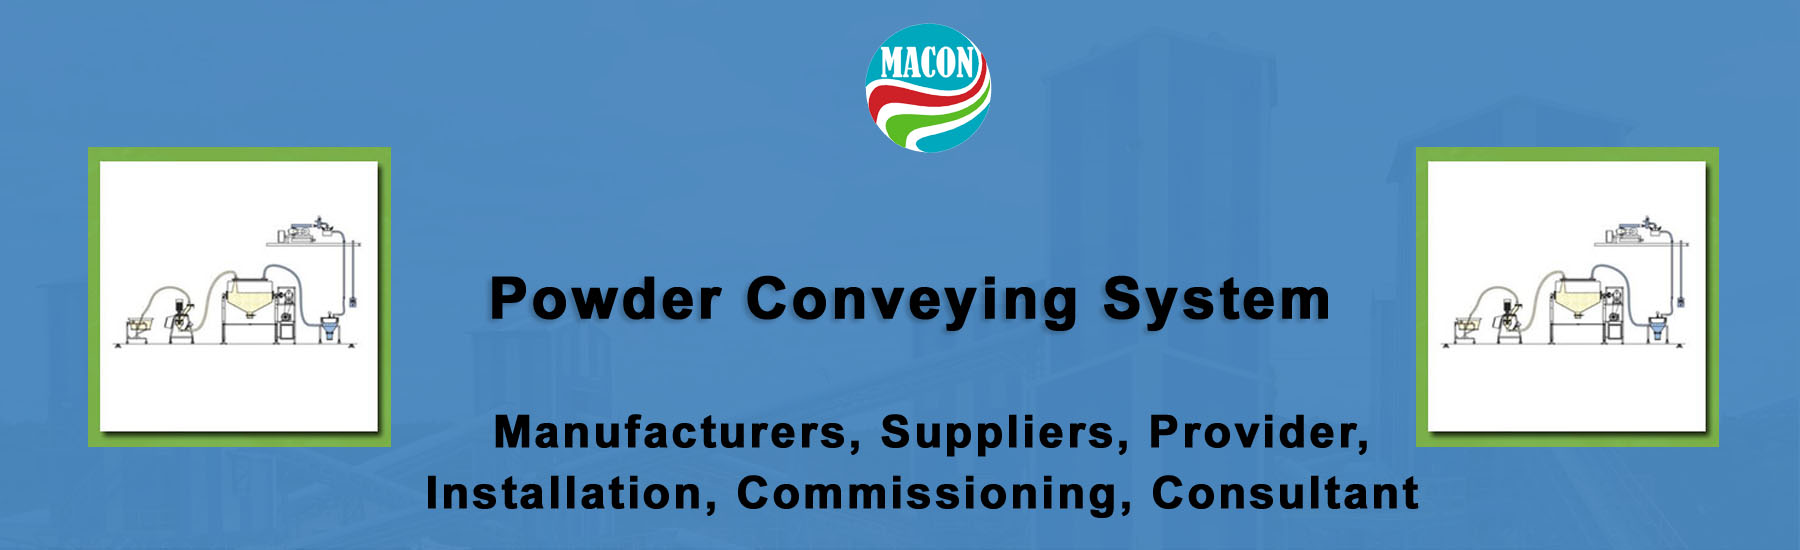 Powder Conveying System